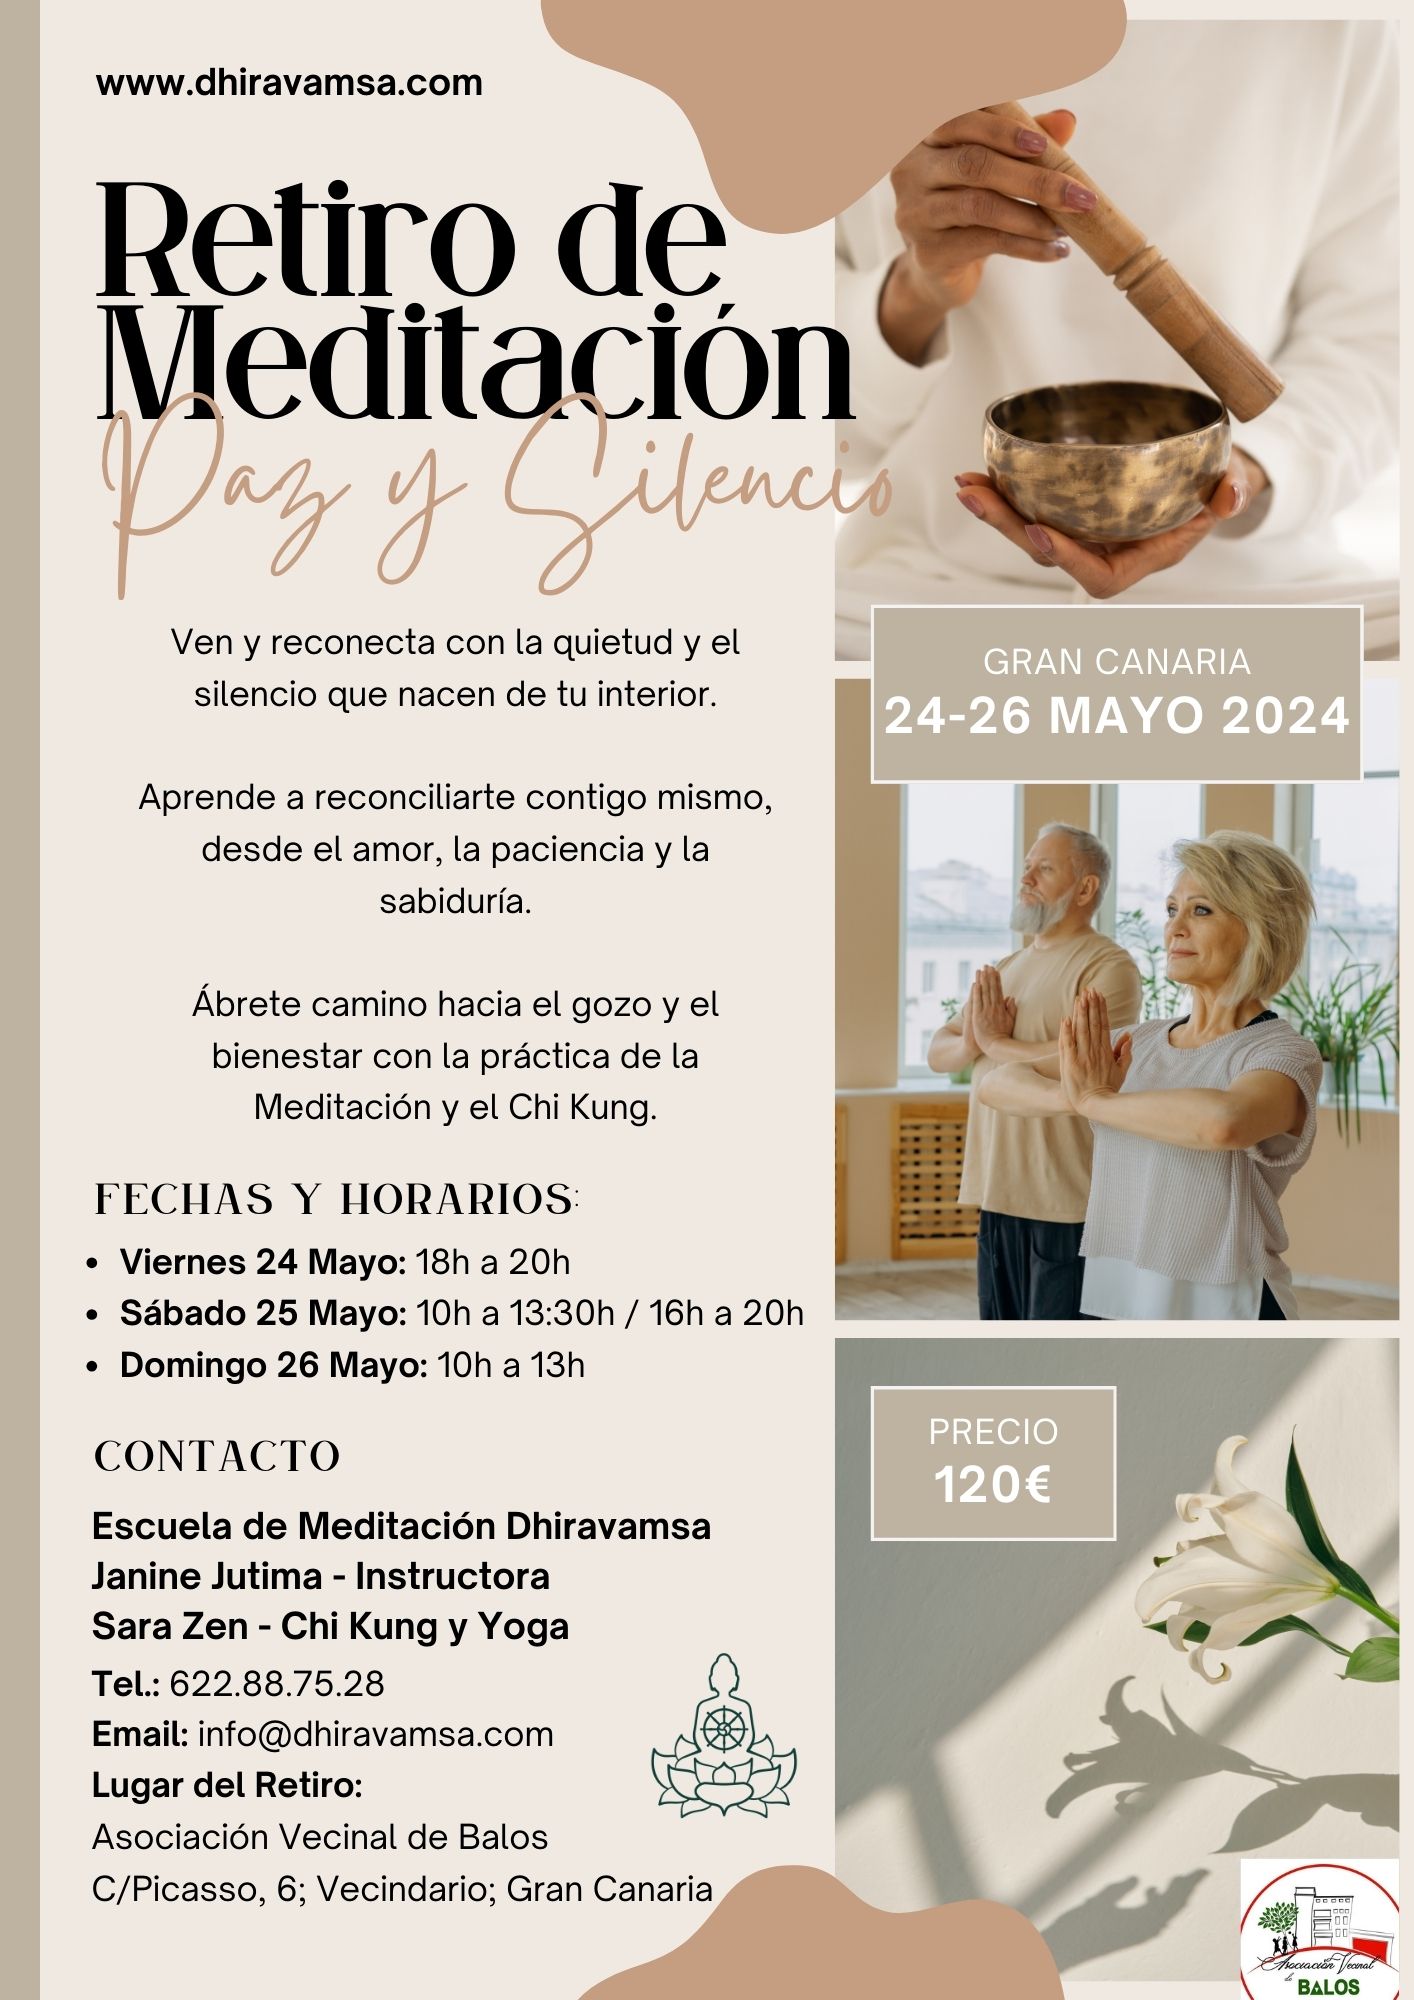 Retiro Urbano de Meditación en Gran Canaria